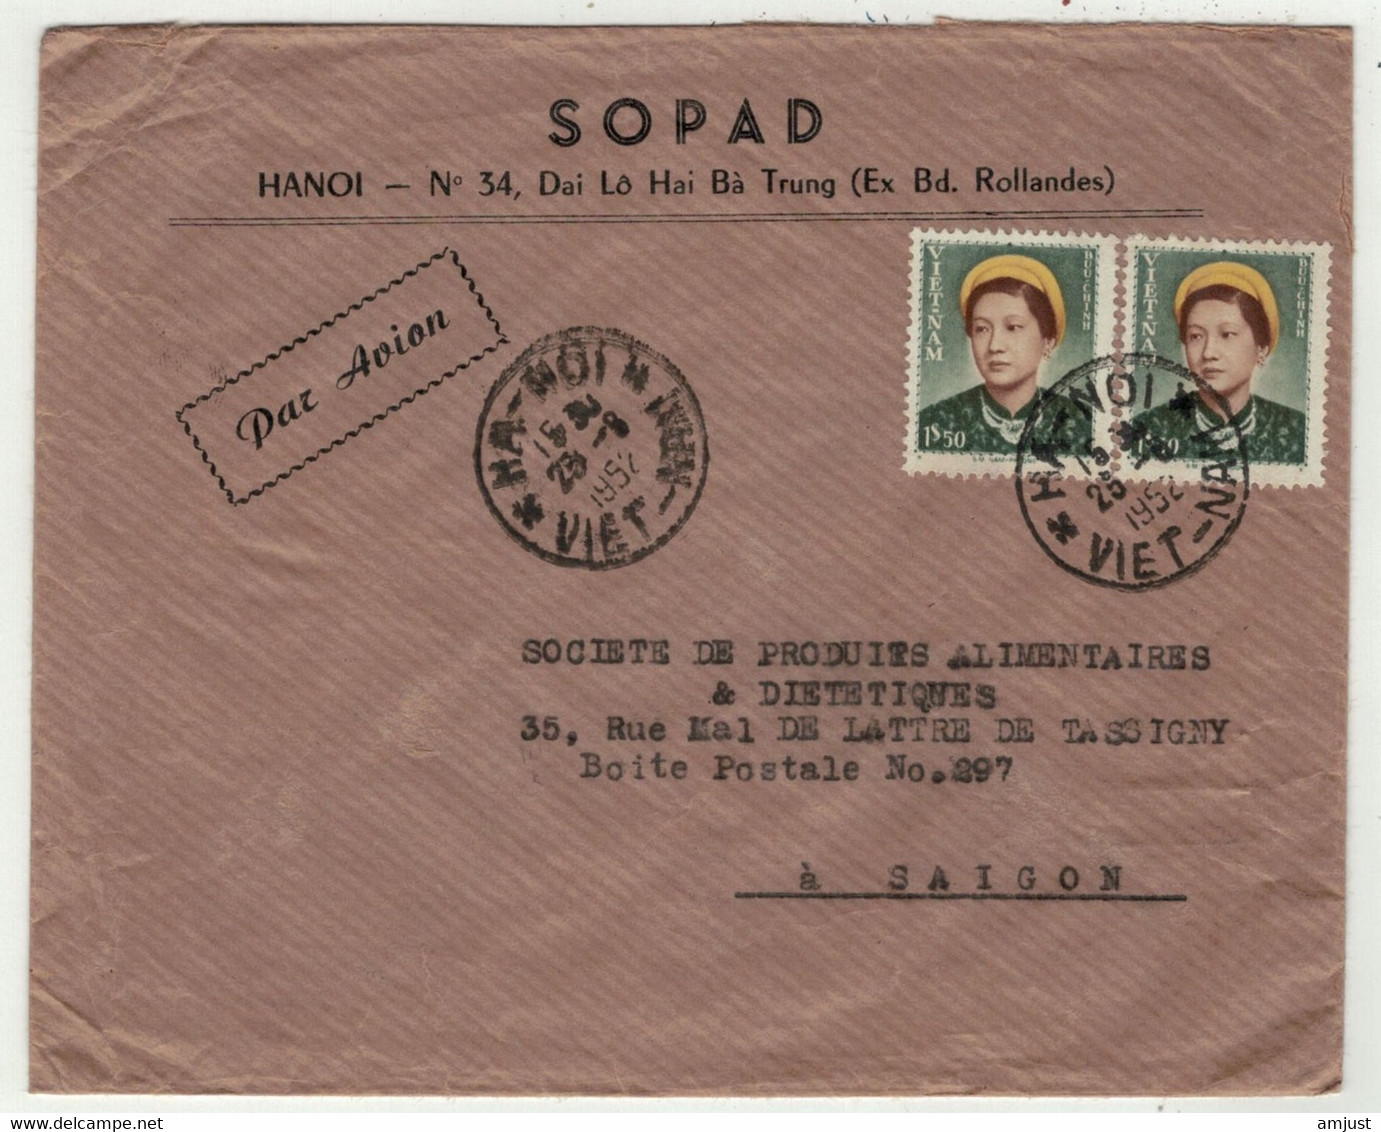 Viêt-Nam // Vietnam //  Lettre Par Avion De Hanoi Pour Saigon  25/8/1952 - Vietnam